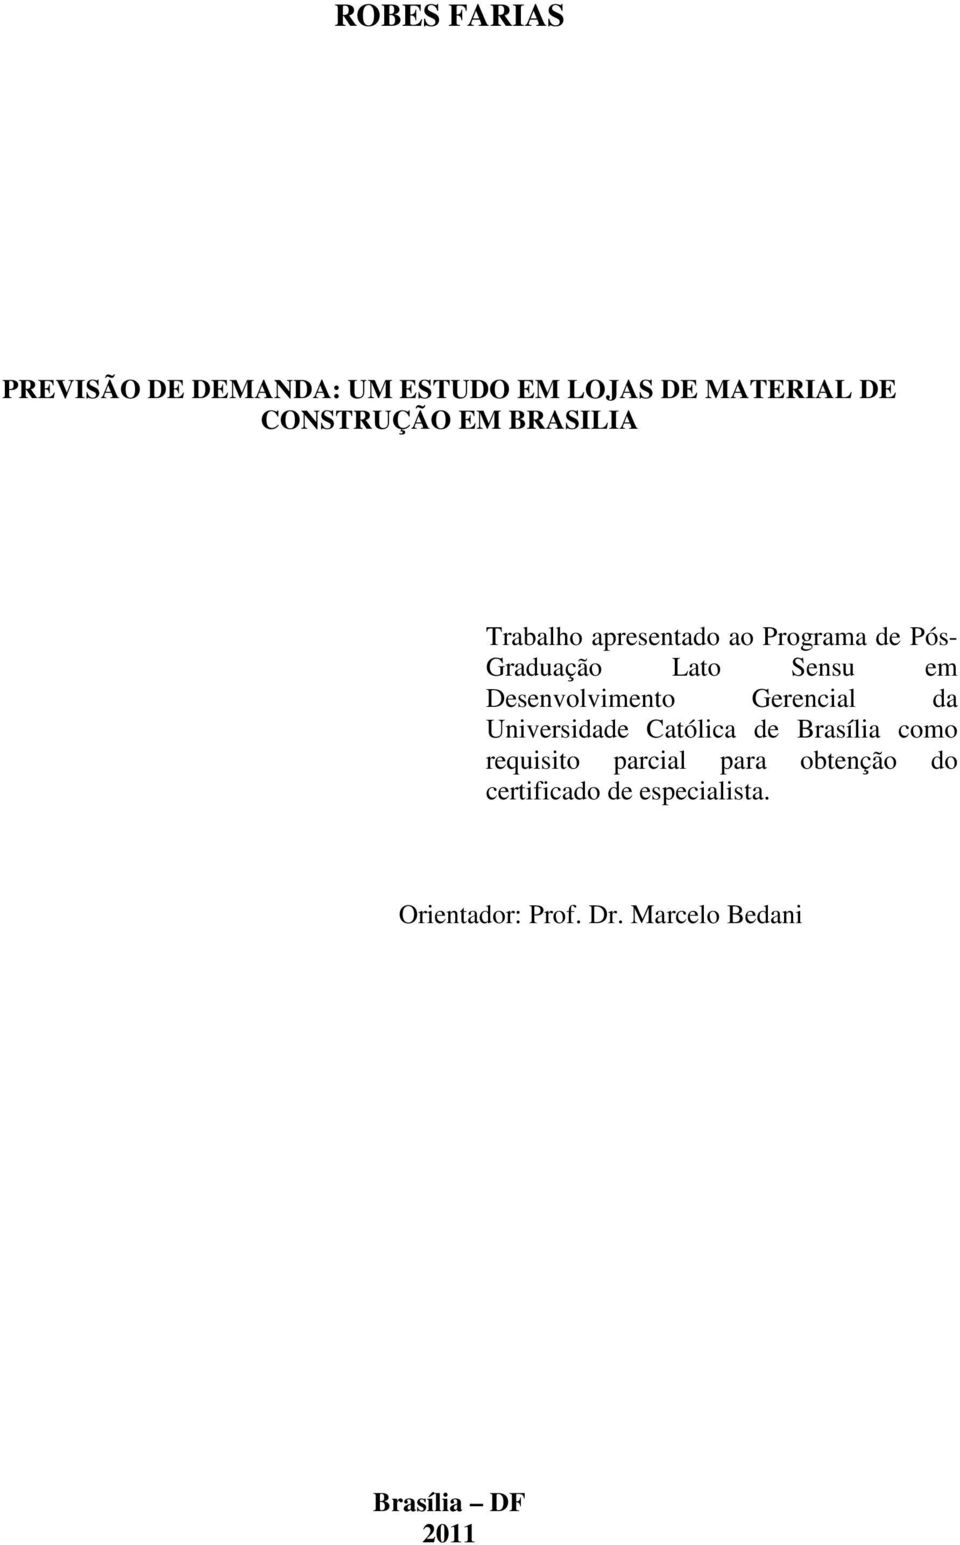 Desenvolvimento Gerencial da Universidade Católica de Brasília como requisito parcial